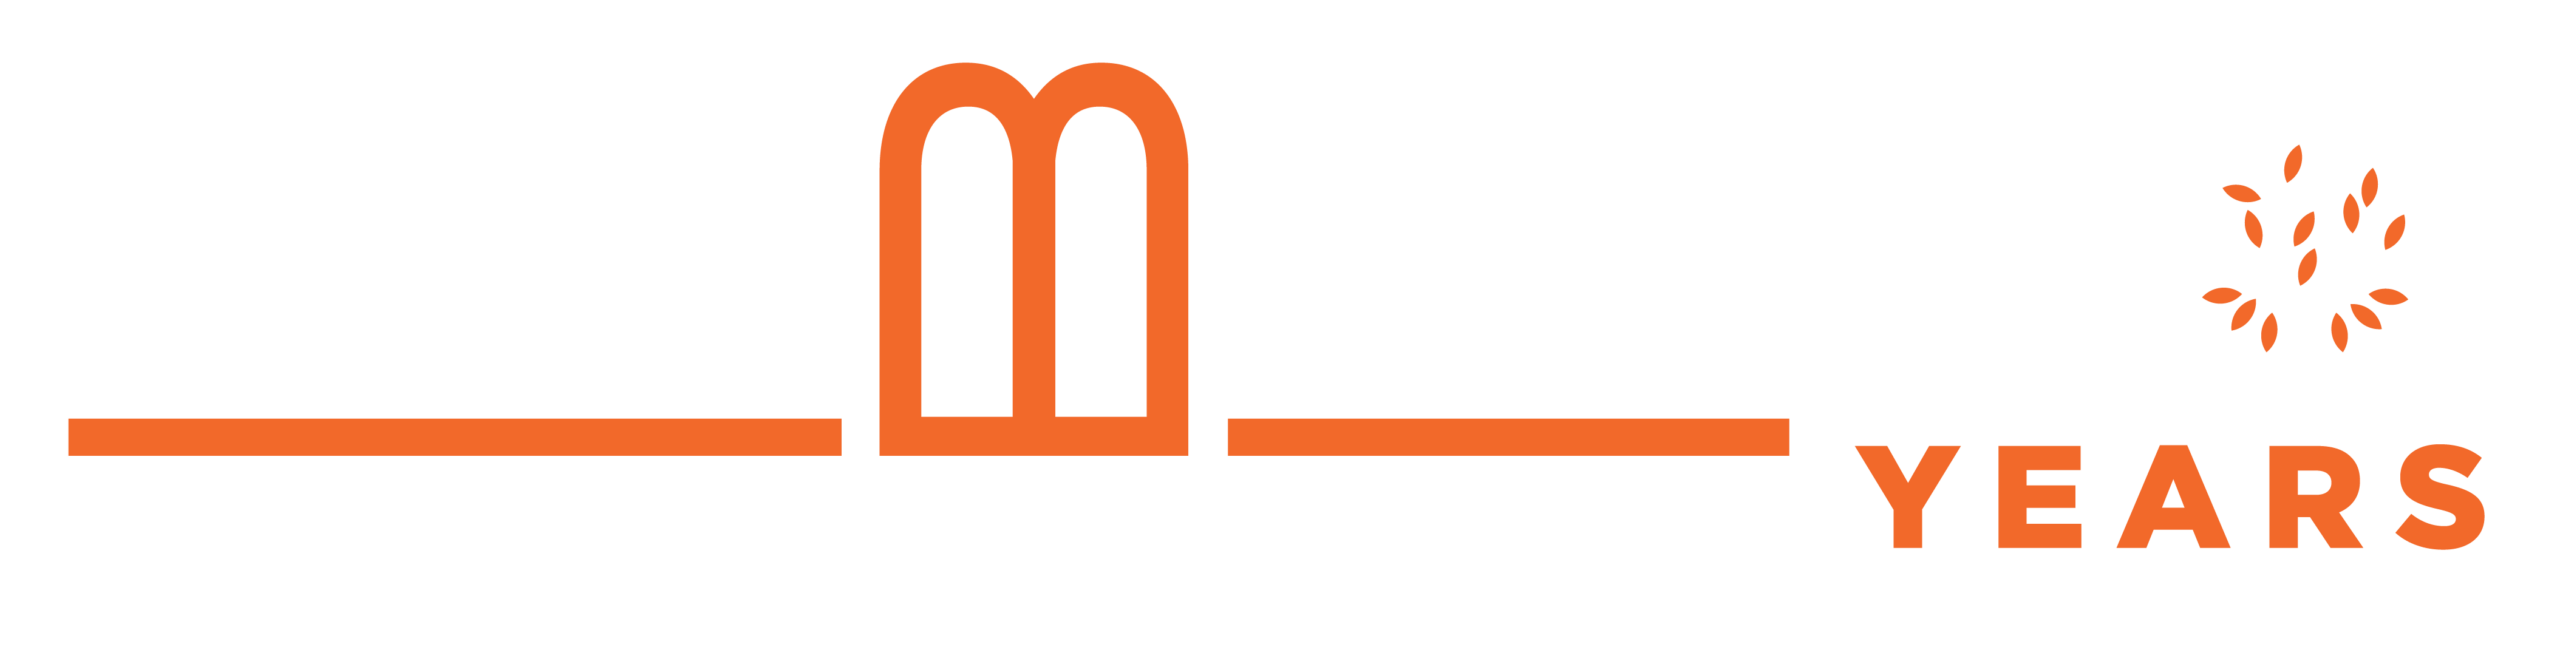 Berman Hebrew Academy